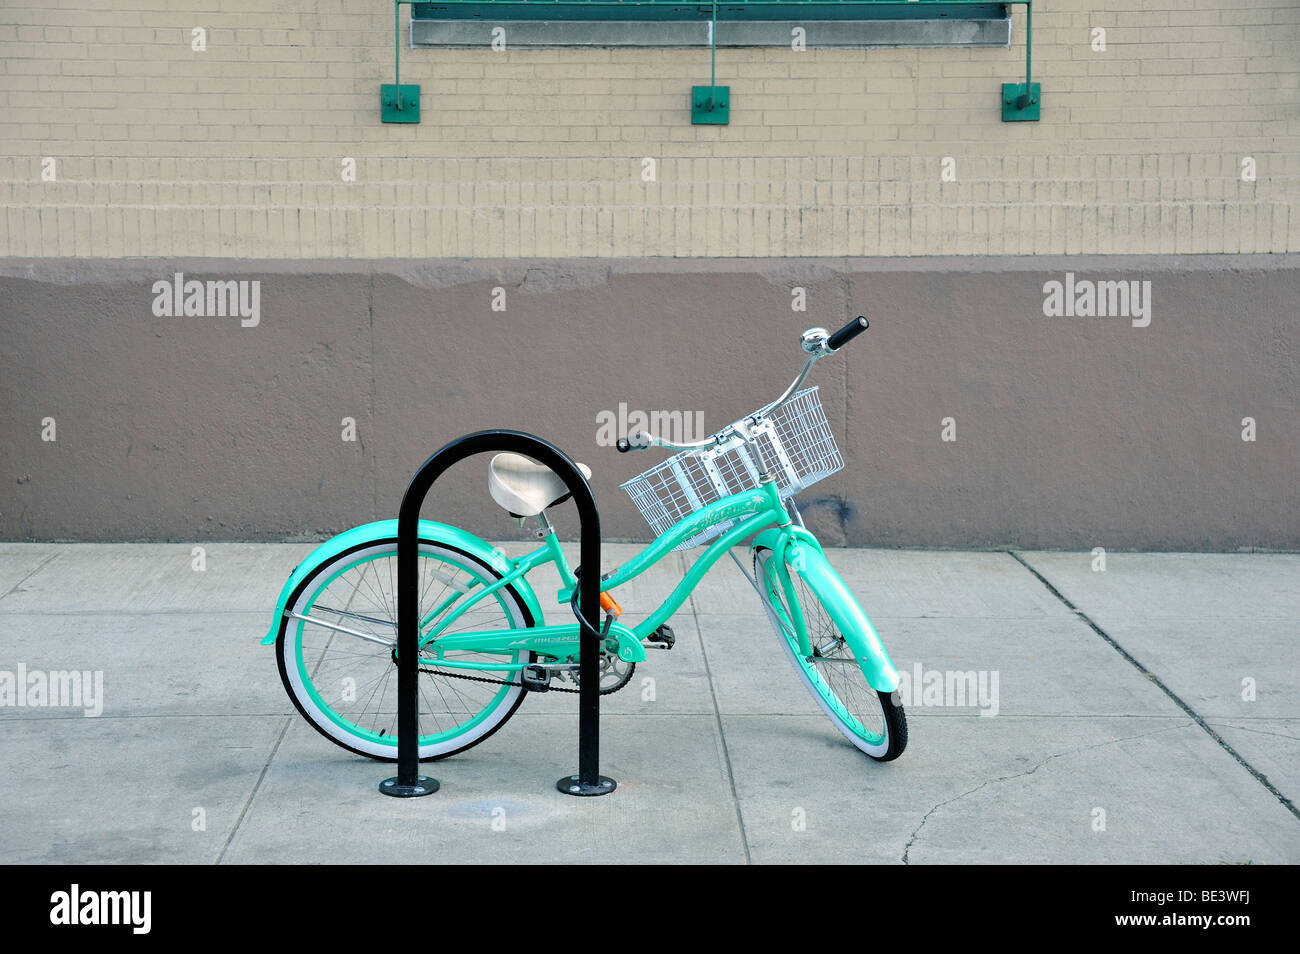 Una donna verde turchese open frame Beach Cruiser bicicletta di stile con un cestello sul manubrio, bloccato ad un supporto per bicicletta nella città di New York Foto Stock